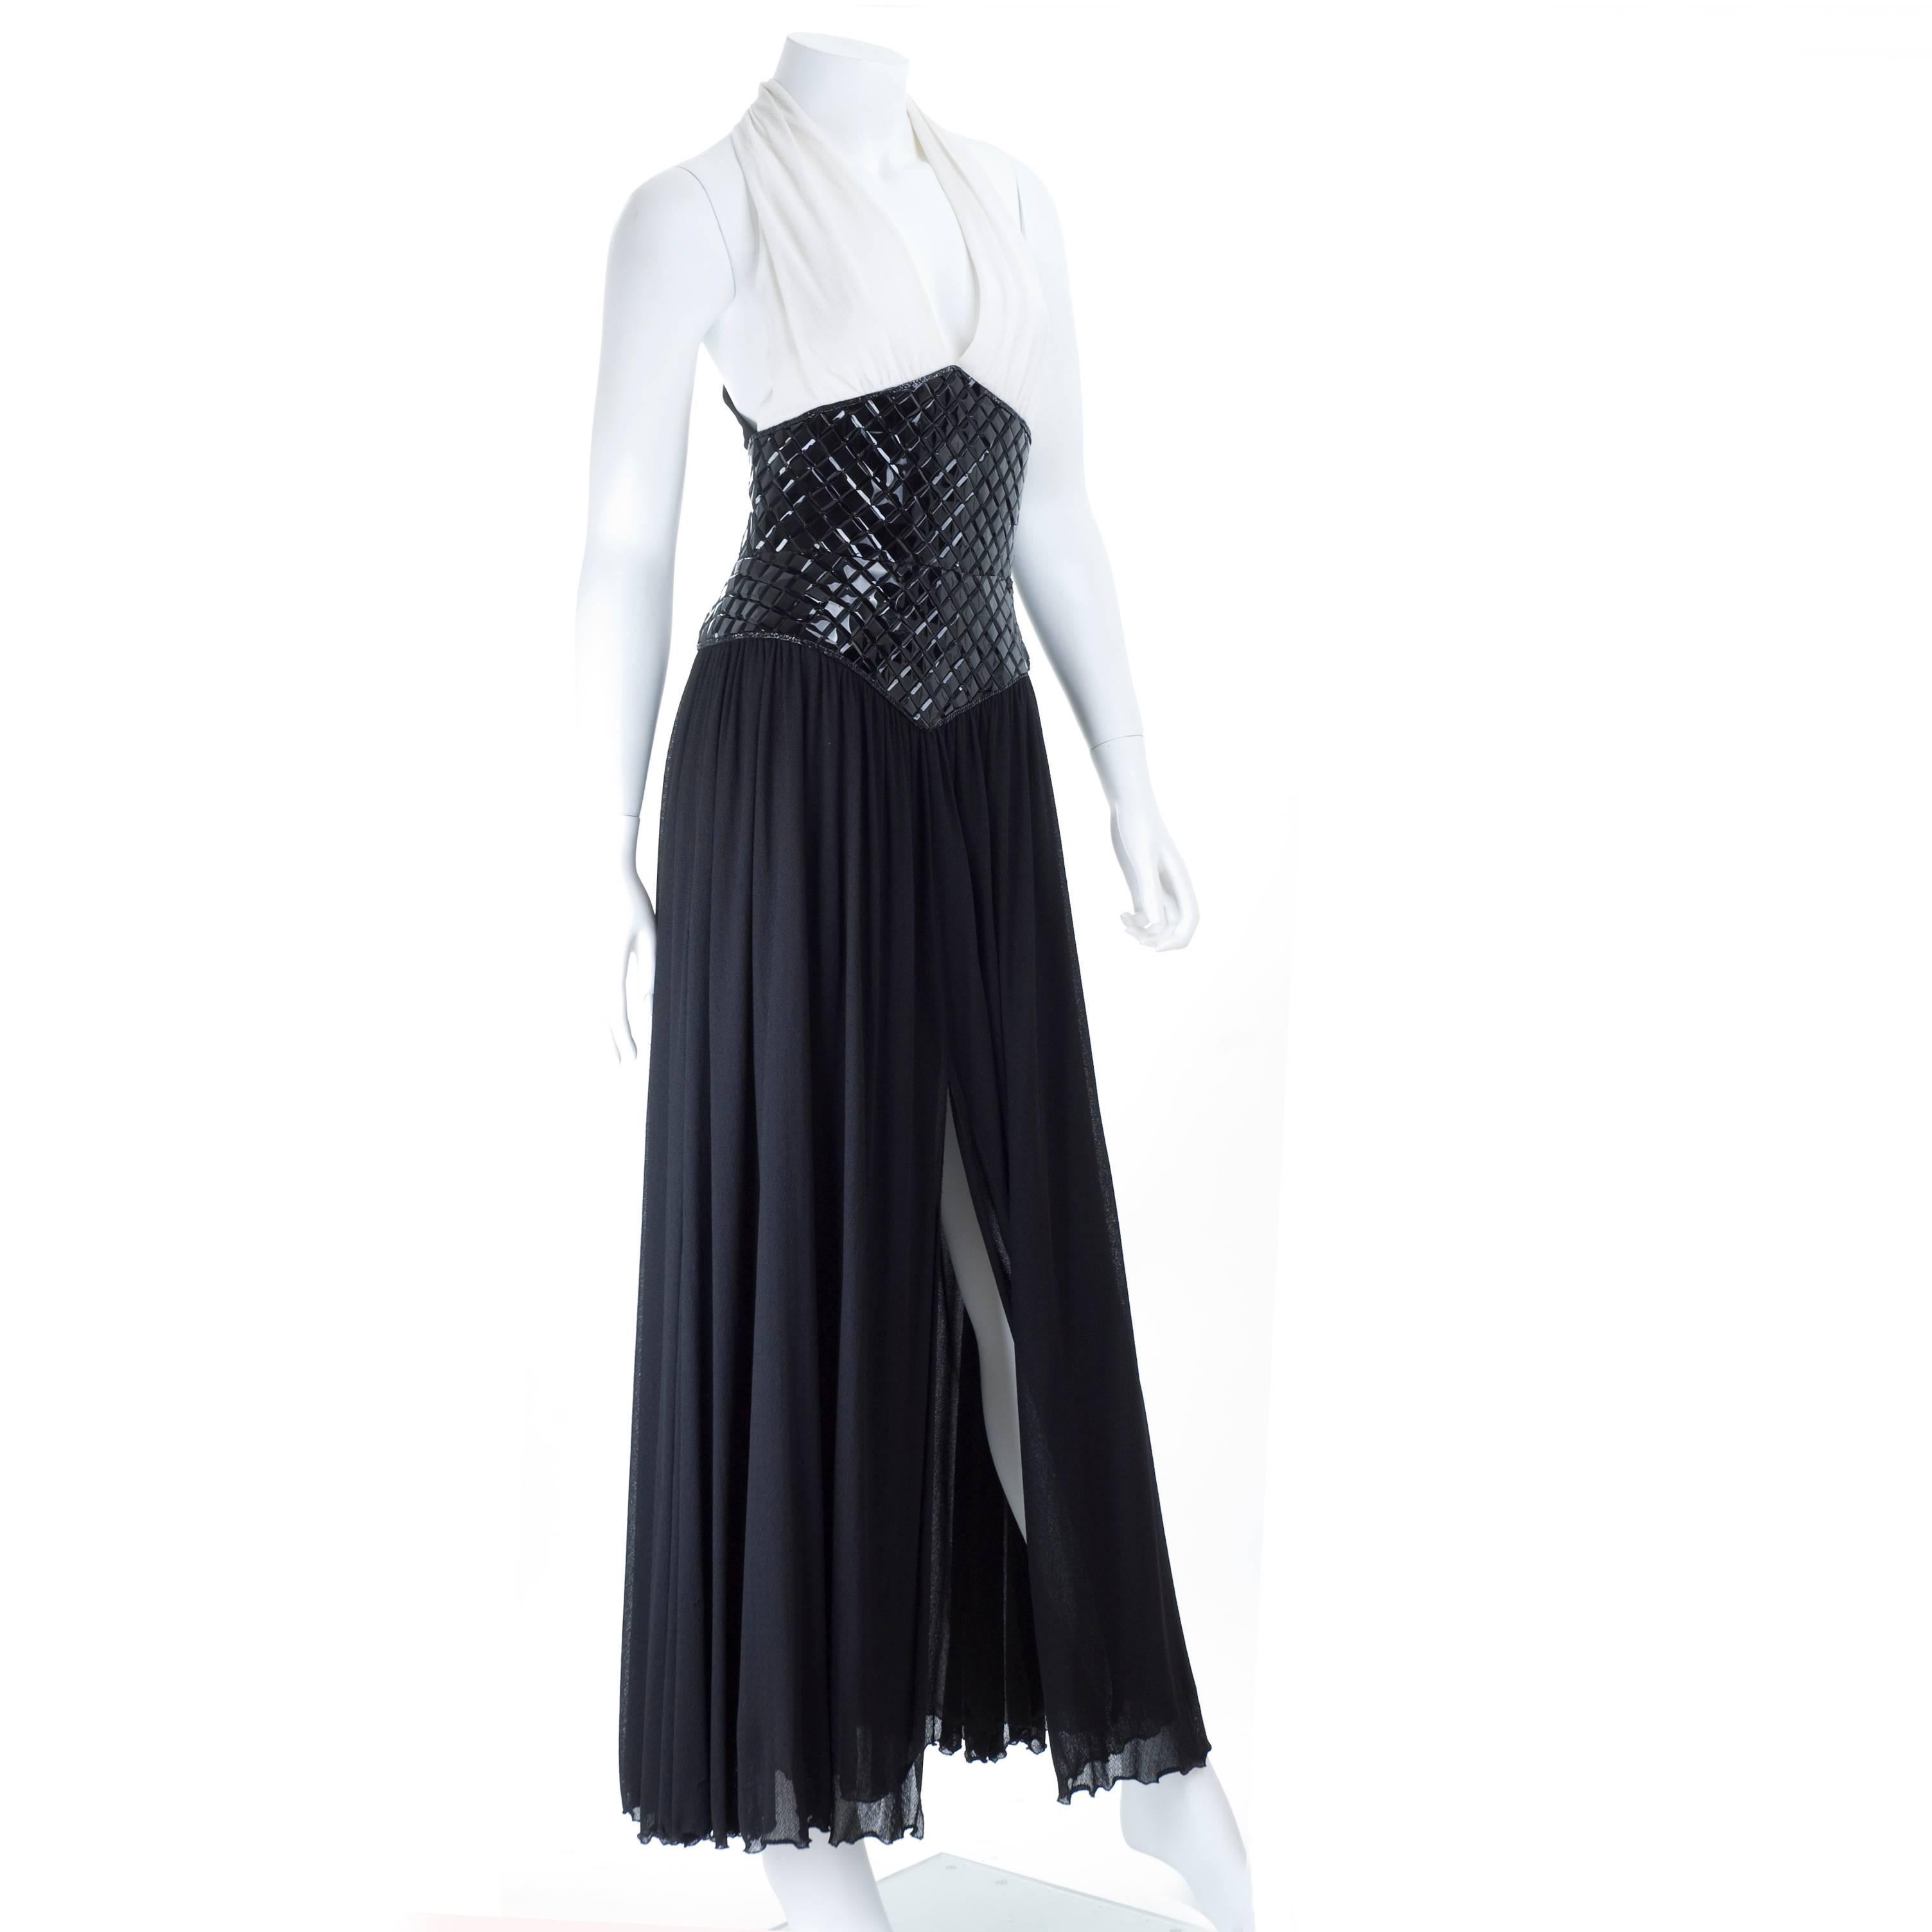 1995 Vintage Chanel Evening Dress Black & White Documented In Good Condition For Sale In Hamburg, Deutschland